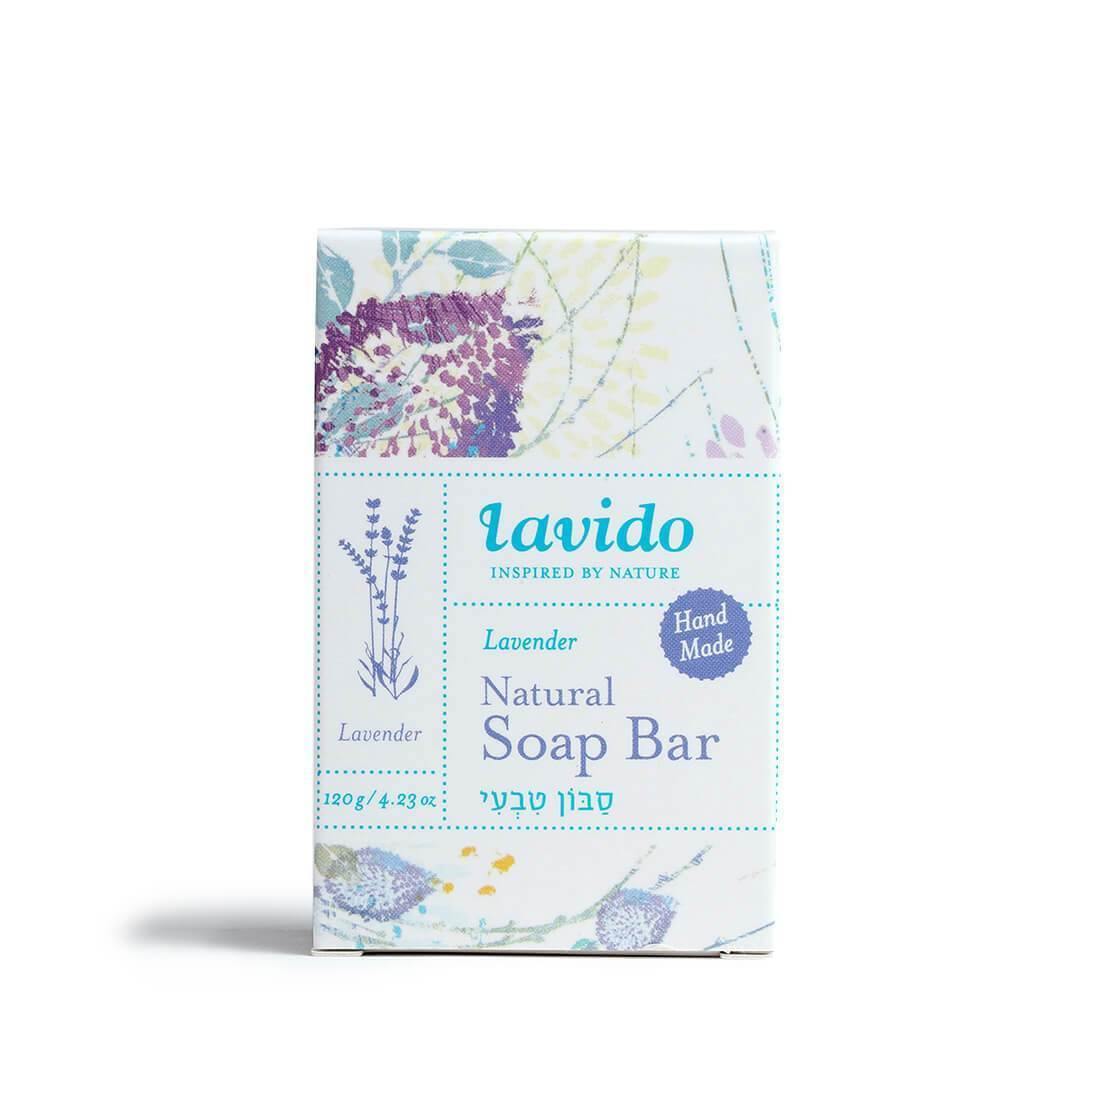 Natural Soap - lavender - Lavido - Israel Menu